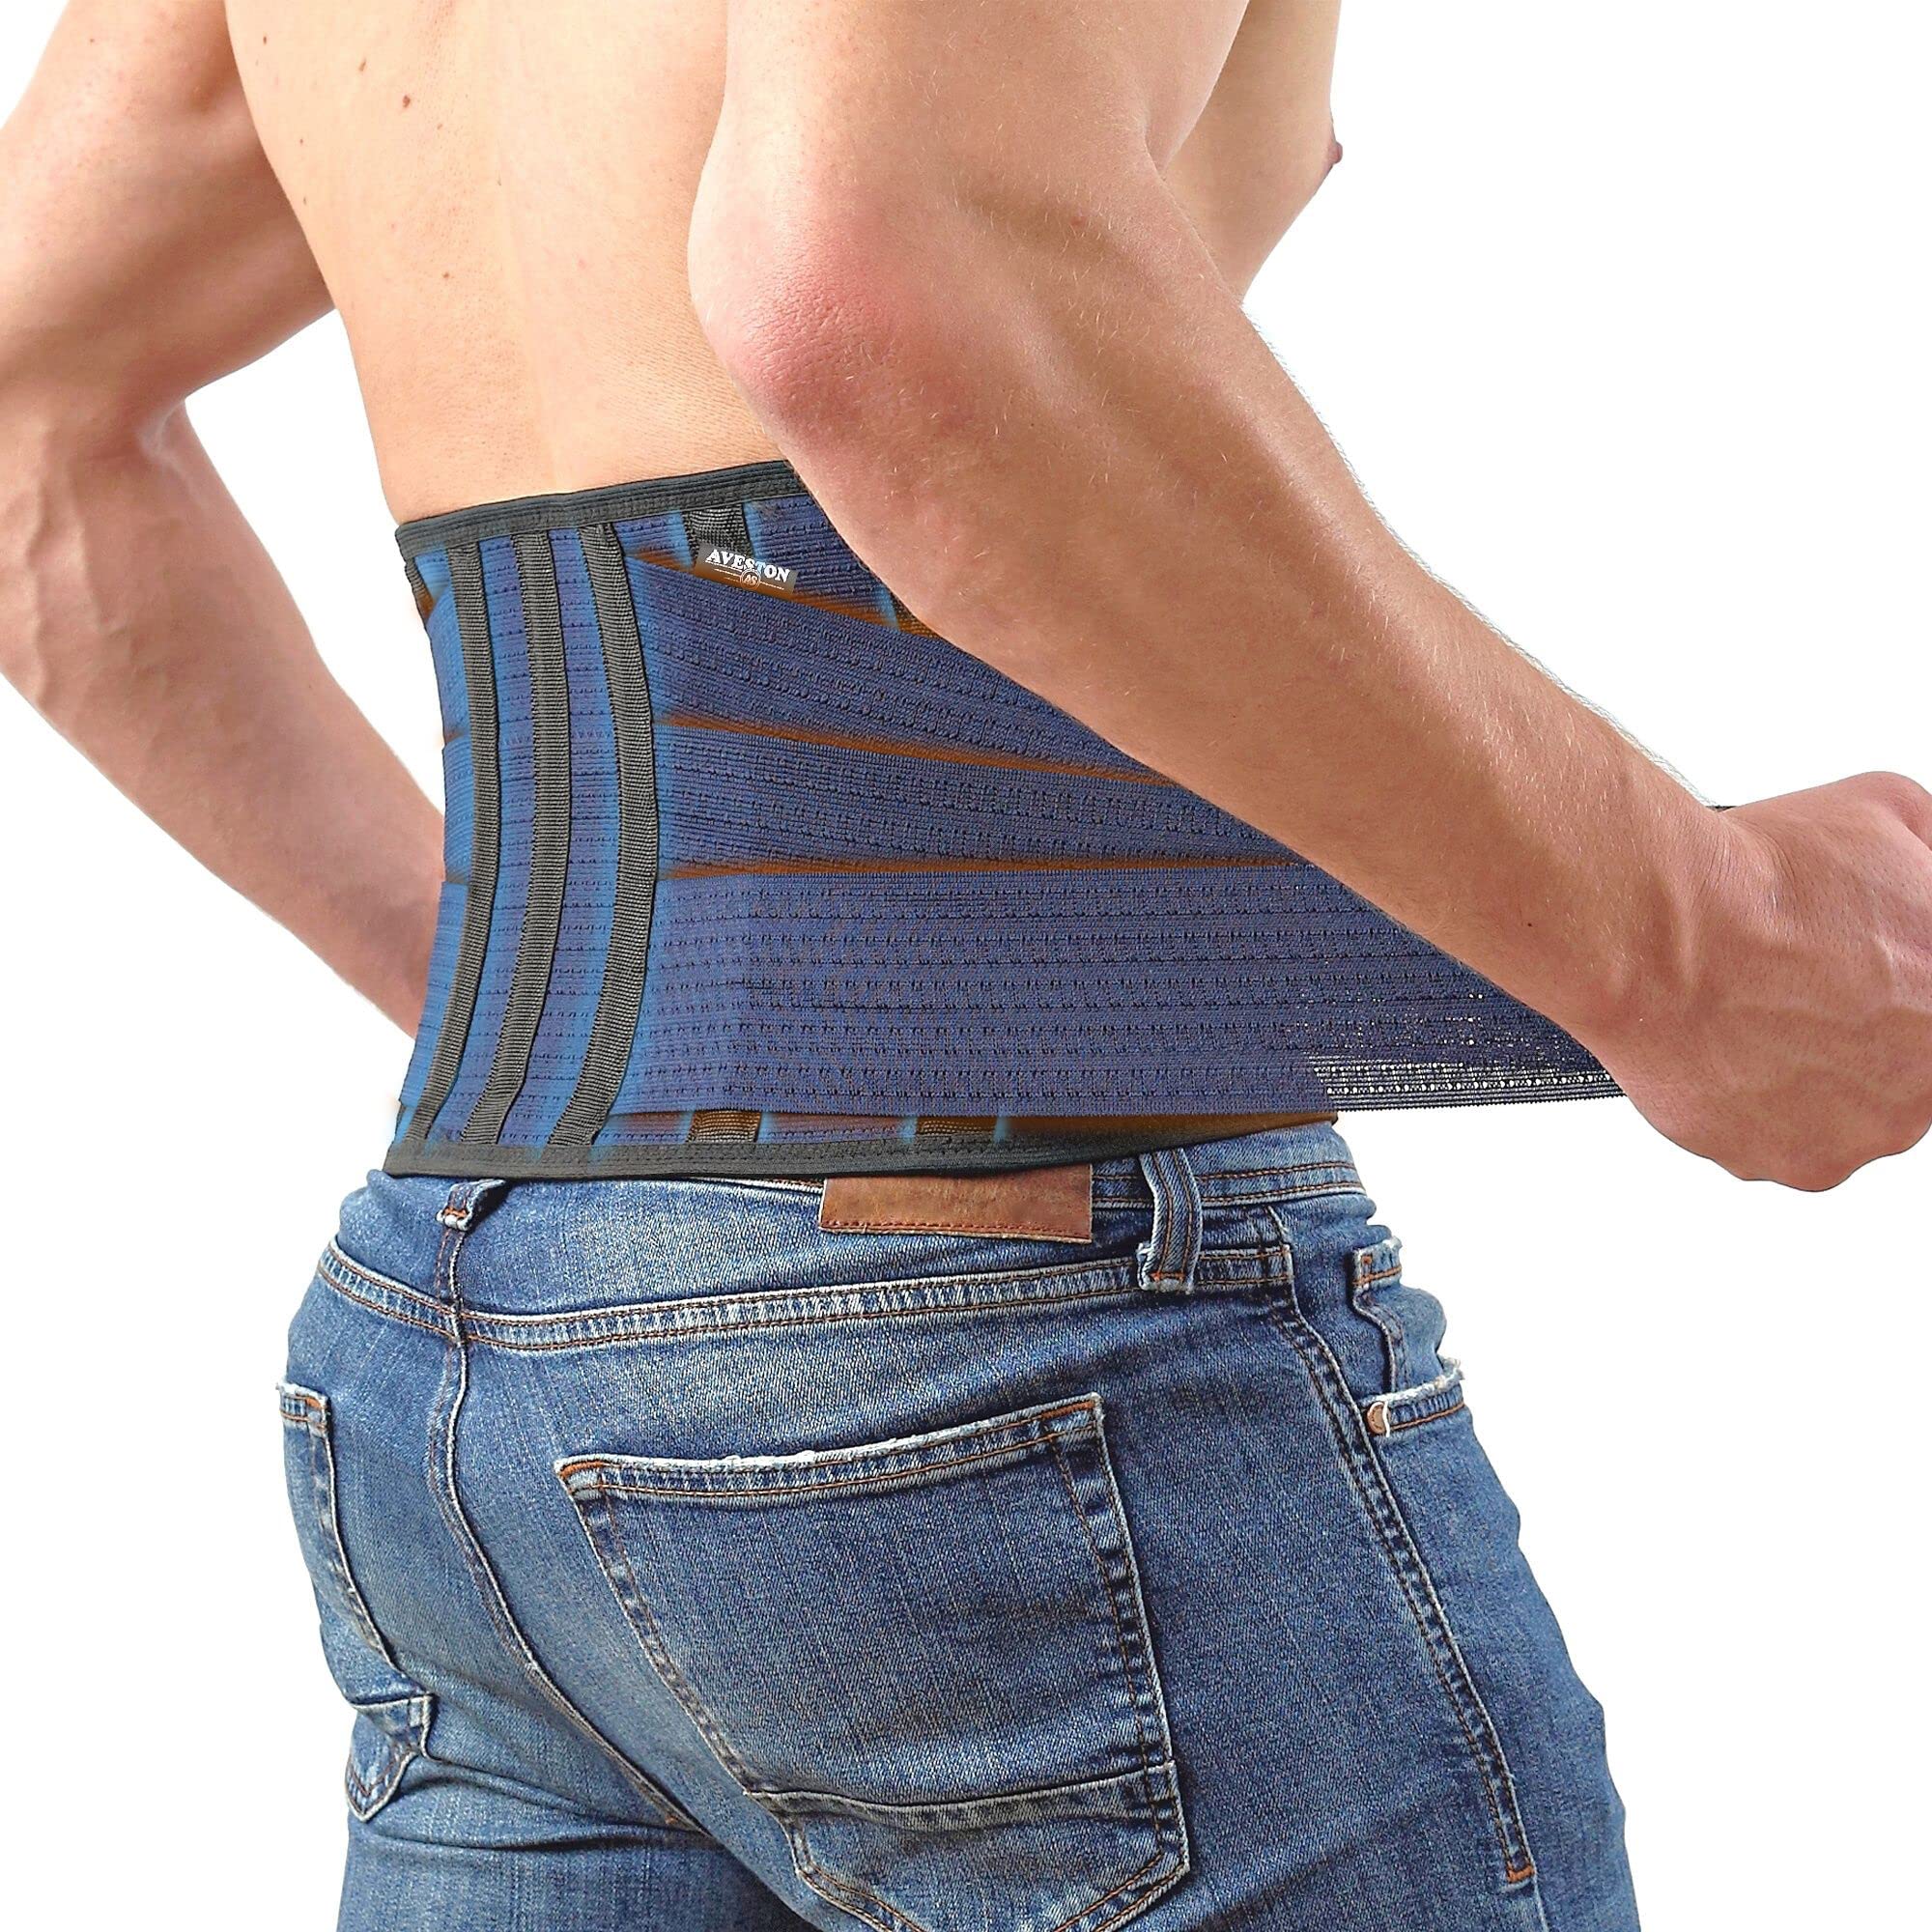 Back Brace for Lower Back Pain - Lumbar Support Belt for Women